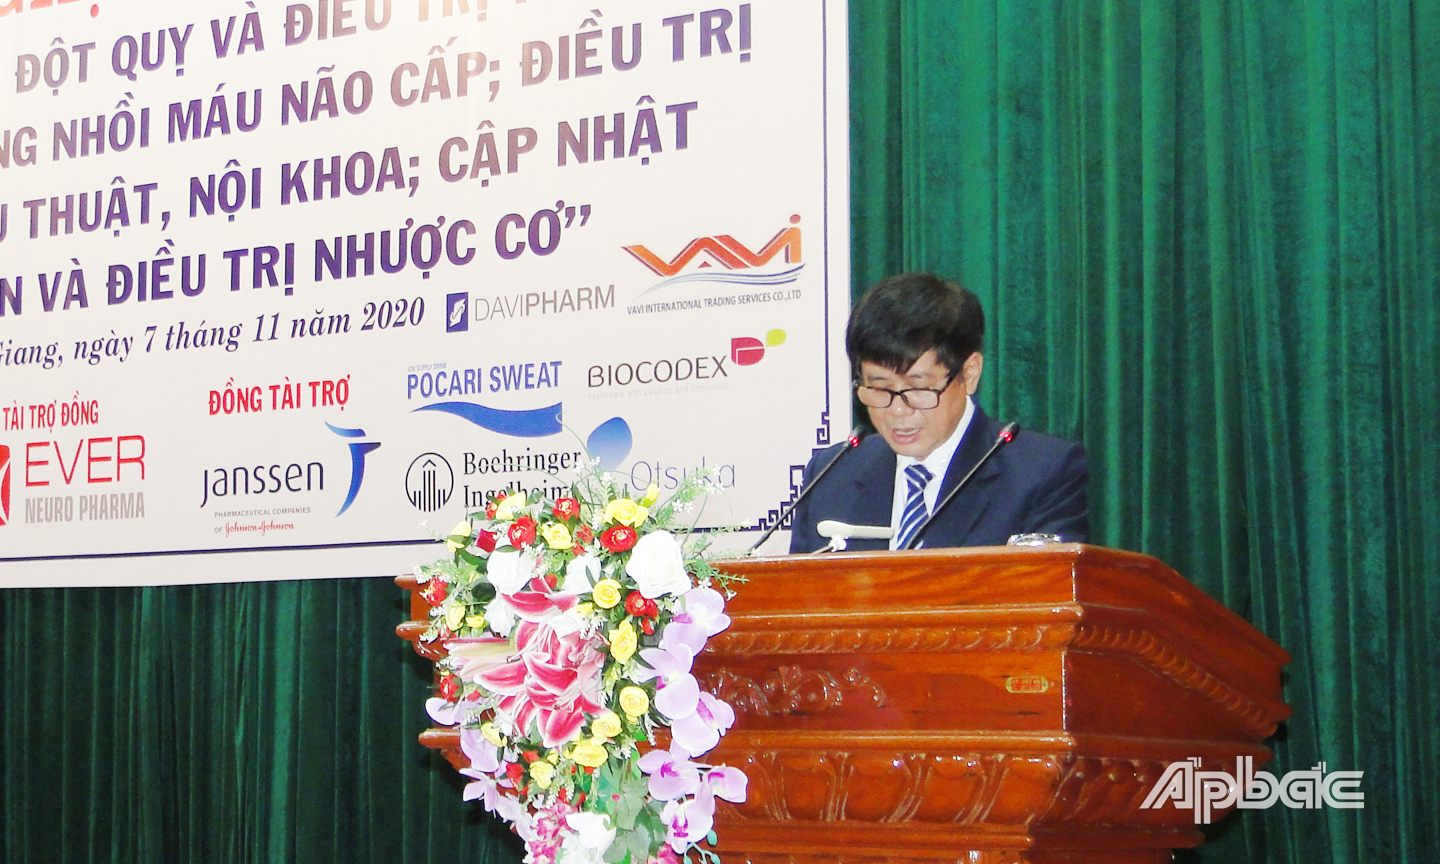 BSCKII Nguyễn Văn Thành, Chủ tịch Hội thần kinh học khu vực Tiền Giang trình bày về quy trình điều trị tiêu sợi huyết trong nhồi máu não cấp